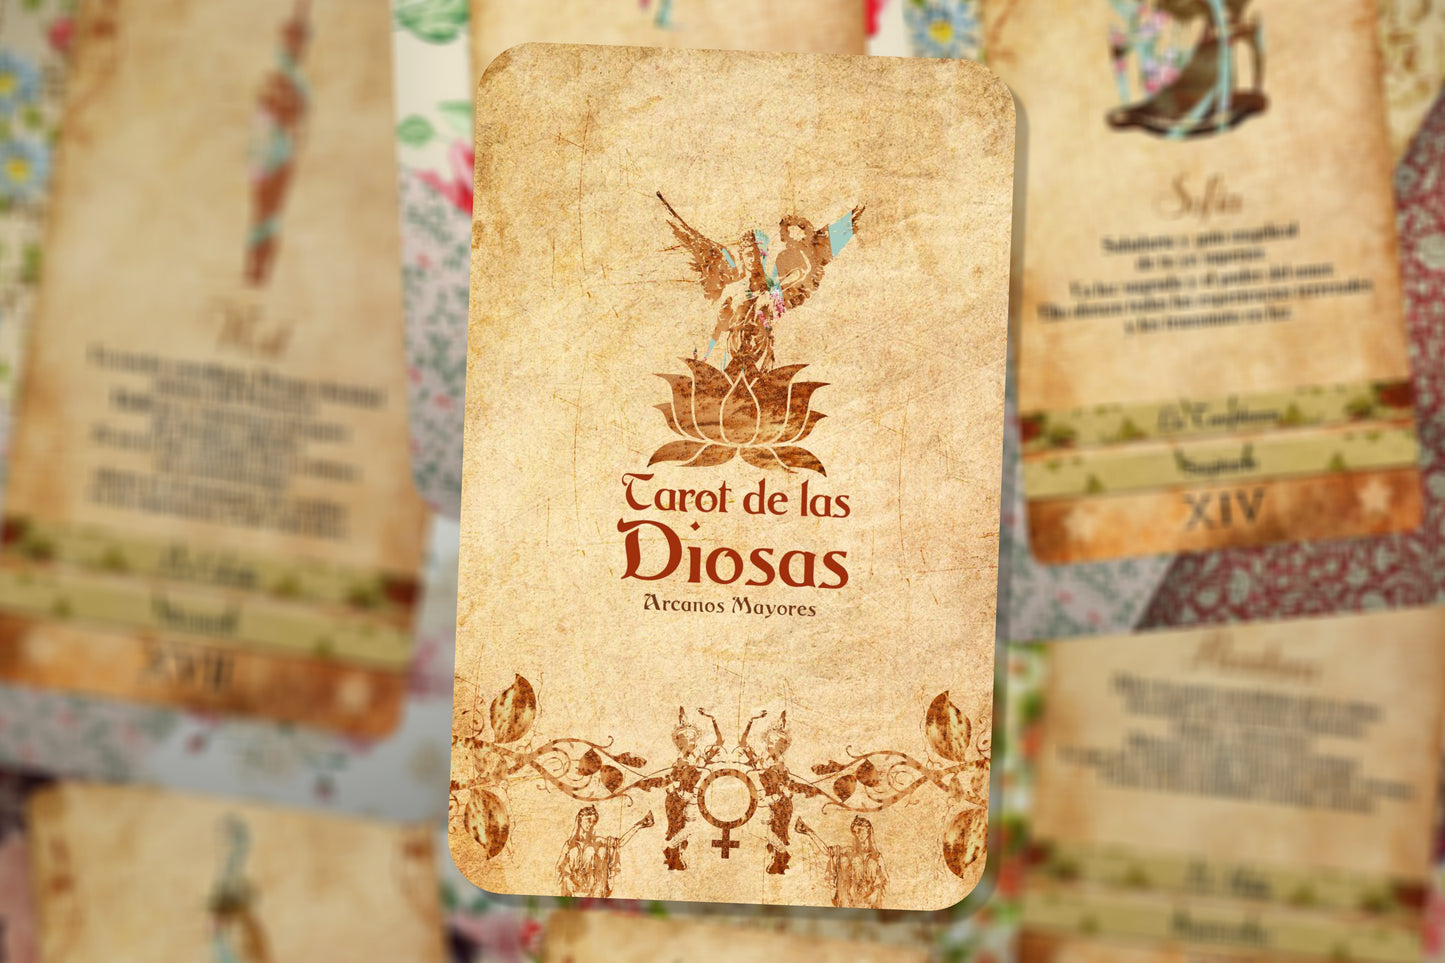 Tarot Deck - Goddess Power Cards - Major Arcana - Sacred Feminine Oracle (Spanish)